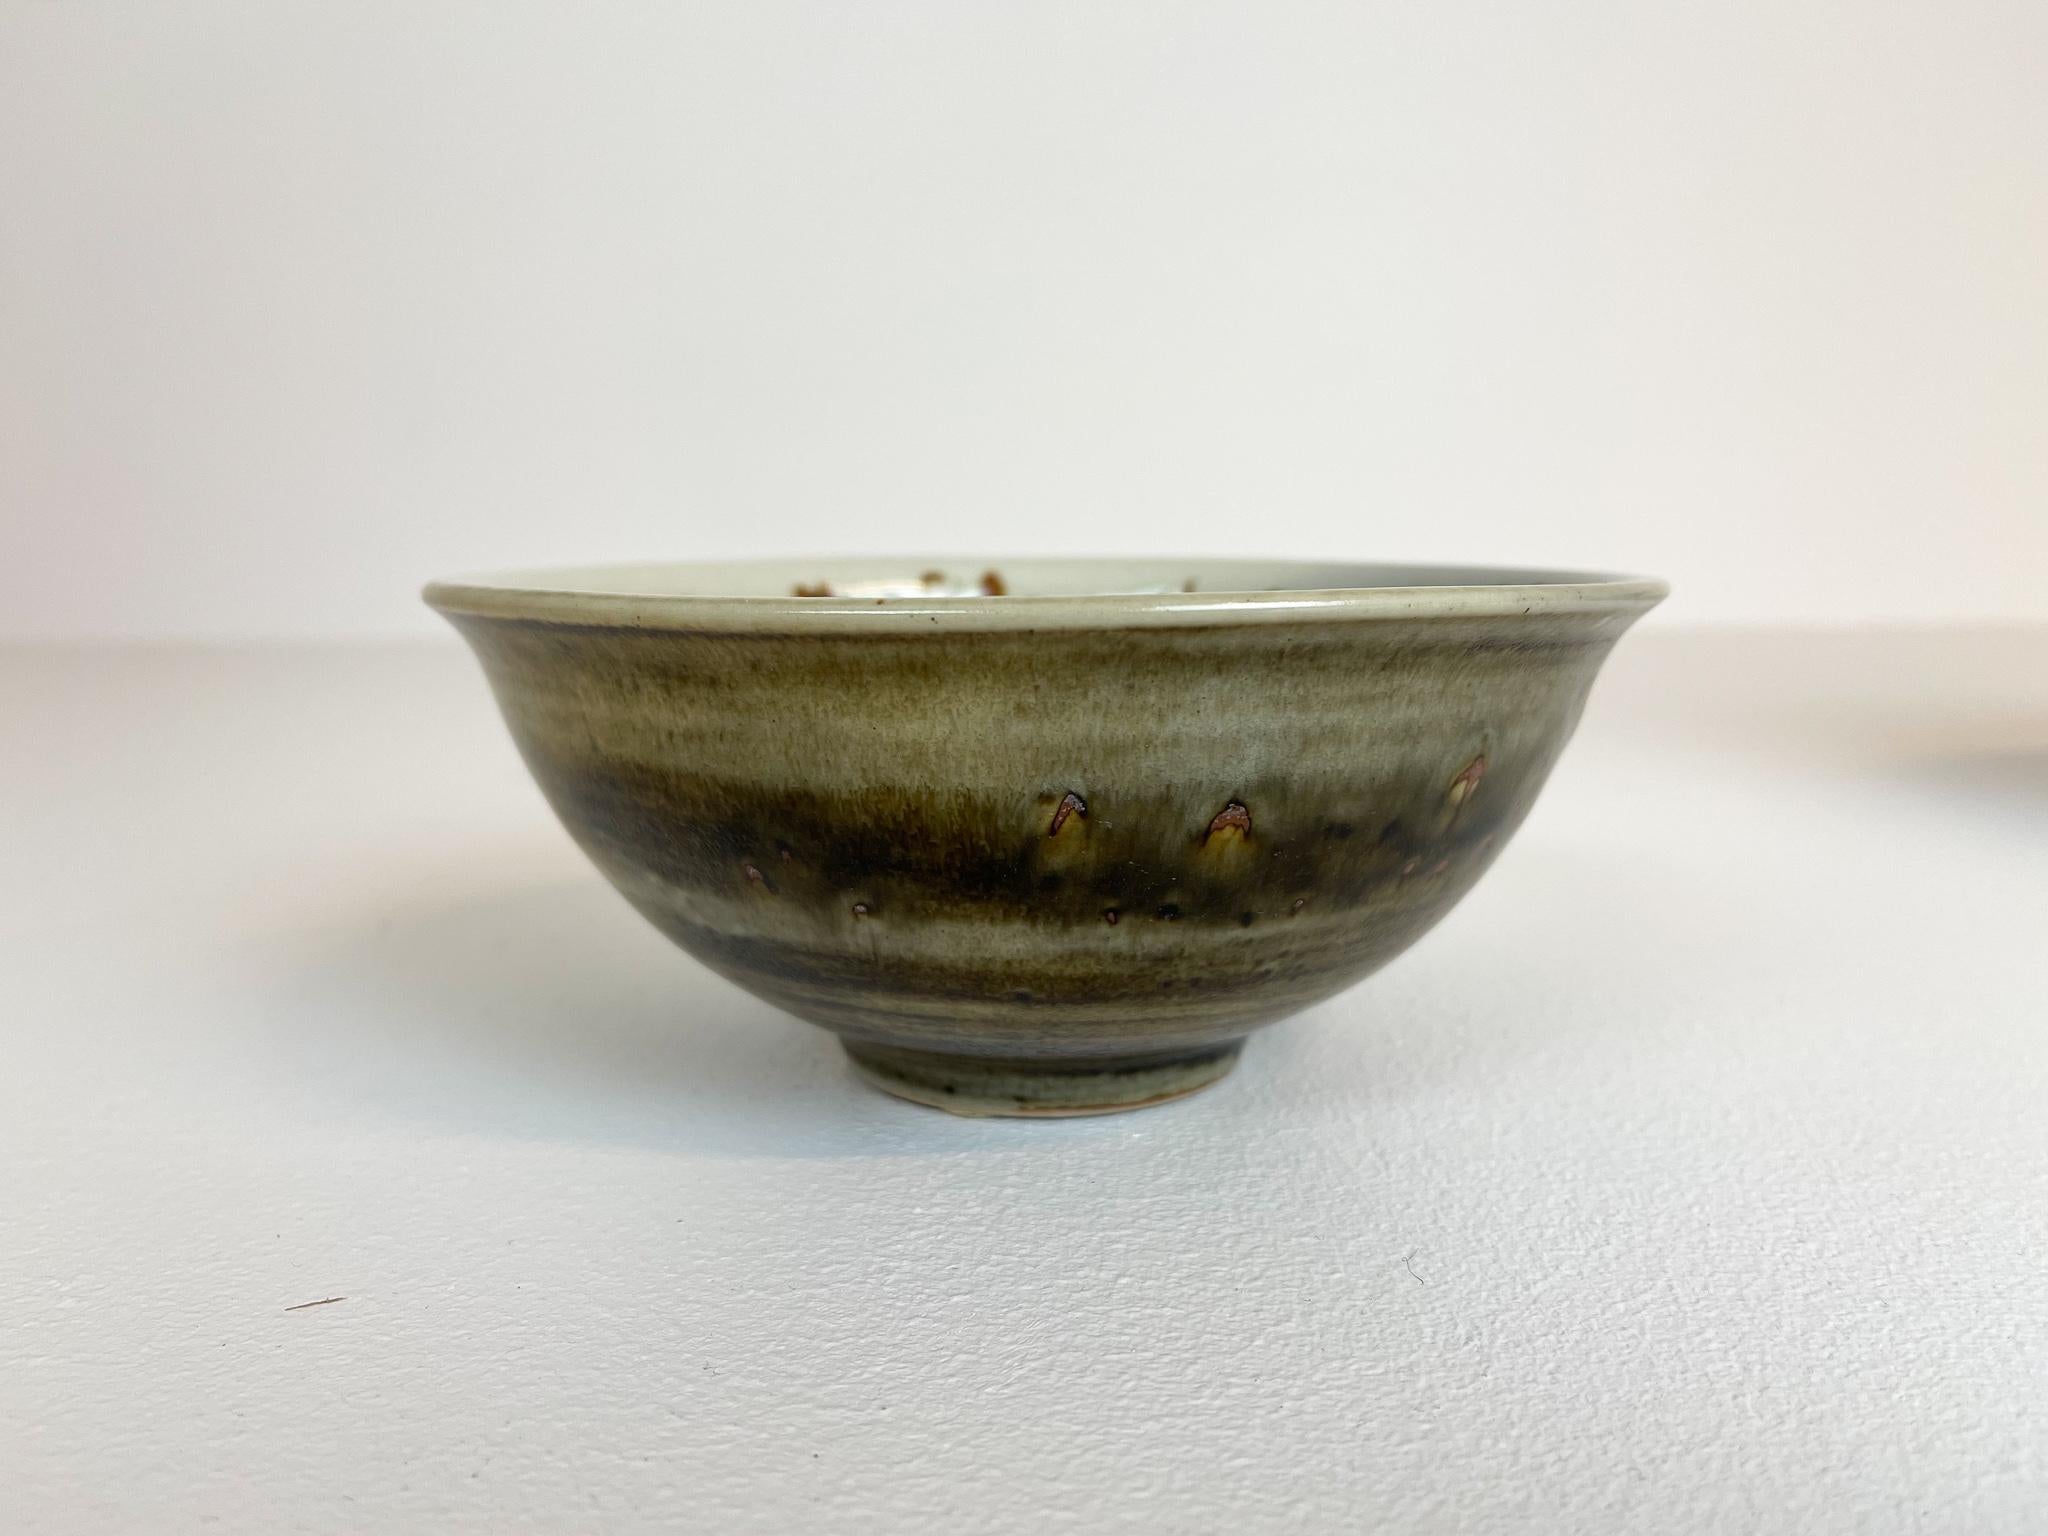 Scandinavian Modern Ceramic Bowls by Carl-Harry Stålhane Design Huset, Sweden For Sale 3